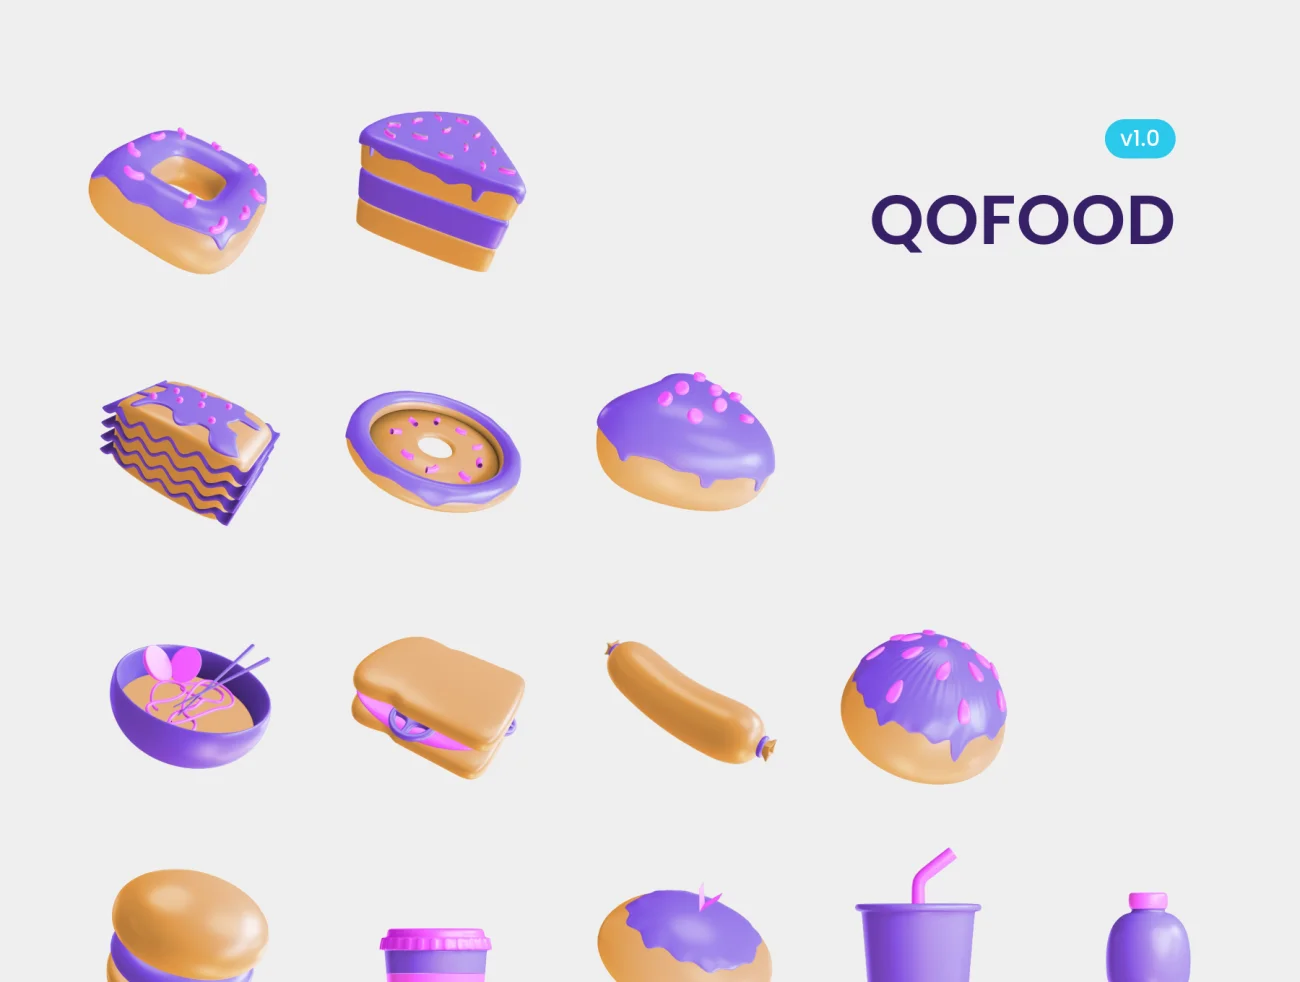 30款食品饮料3D图标方便自定义修改 QOFOOD 3D Food and Drink Icons插图11